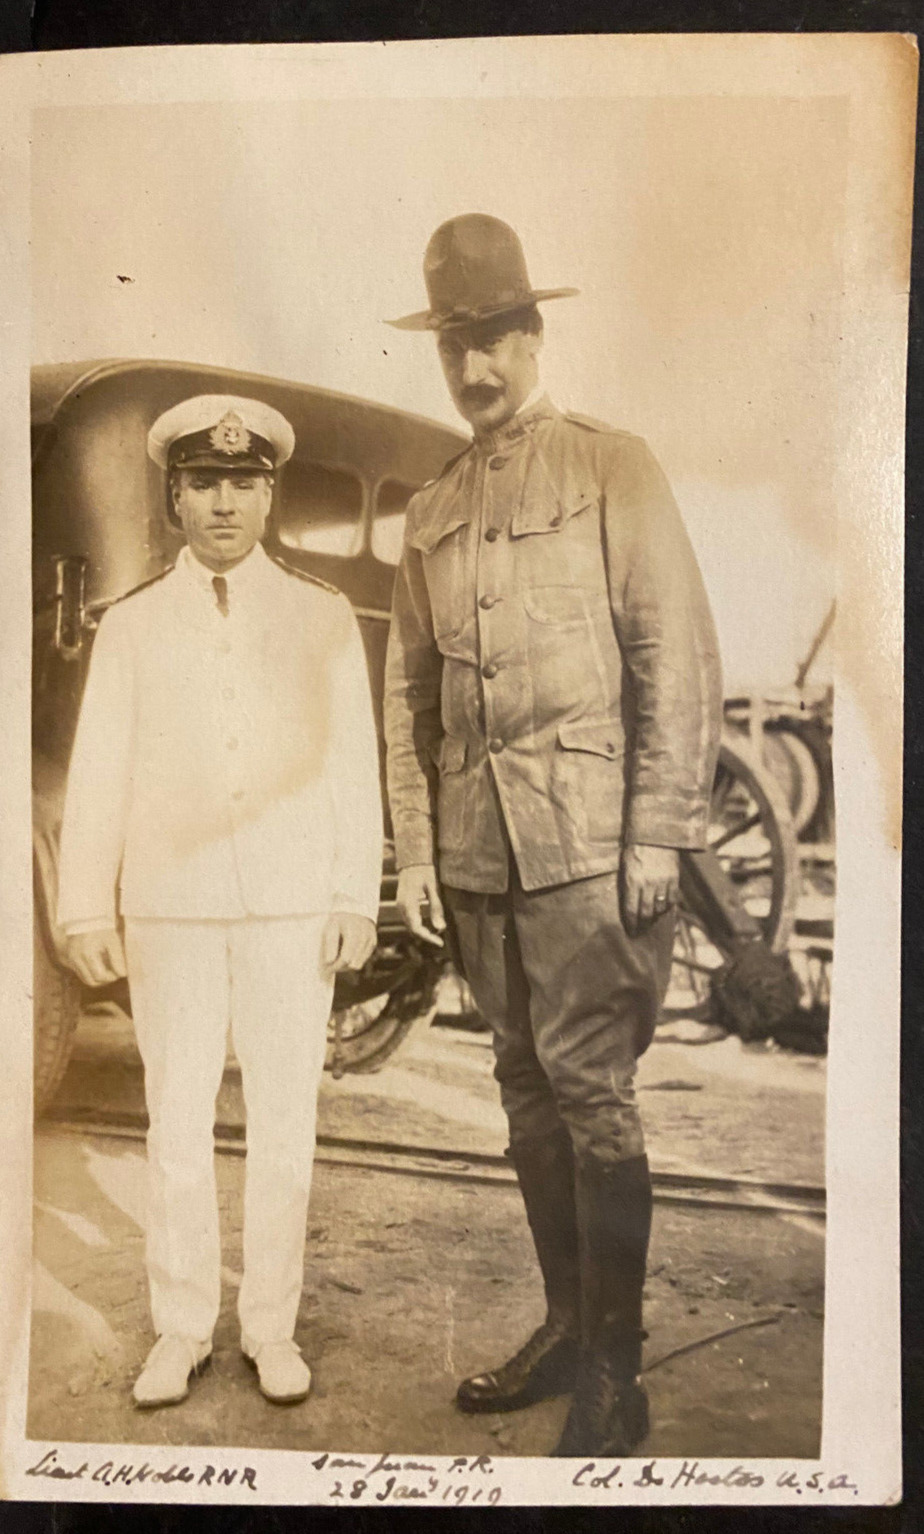 Puerto Rico, 1910, RPPC, Col. Eugenio C De Hostos 65 INF., POST CARD,